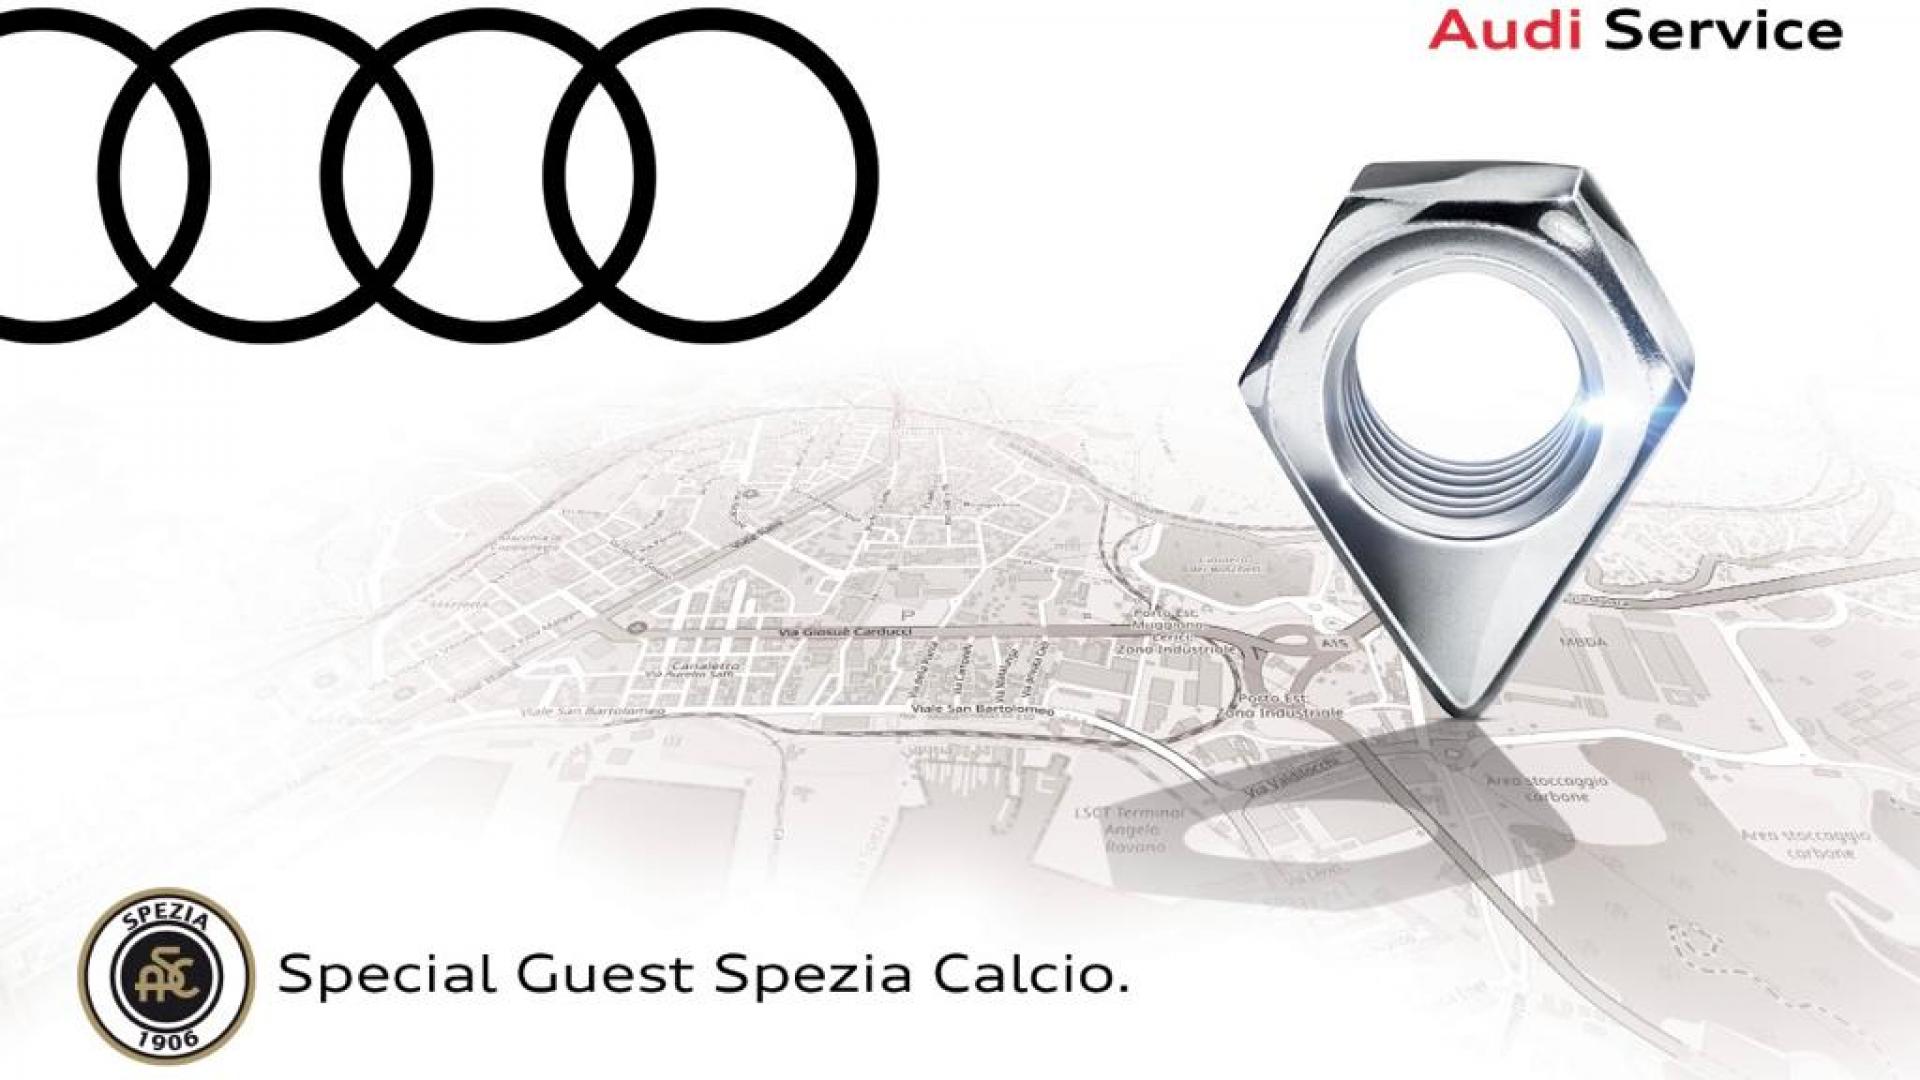 Spezia Calcio inaugurates the new Audi Service Brotini